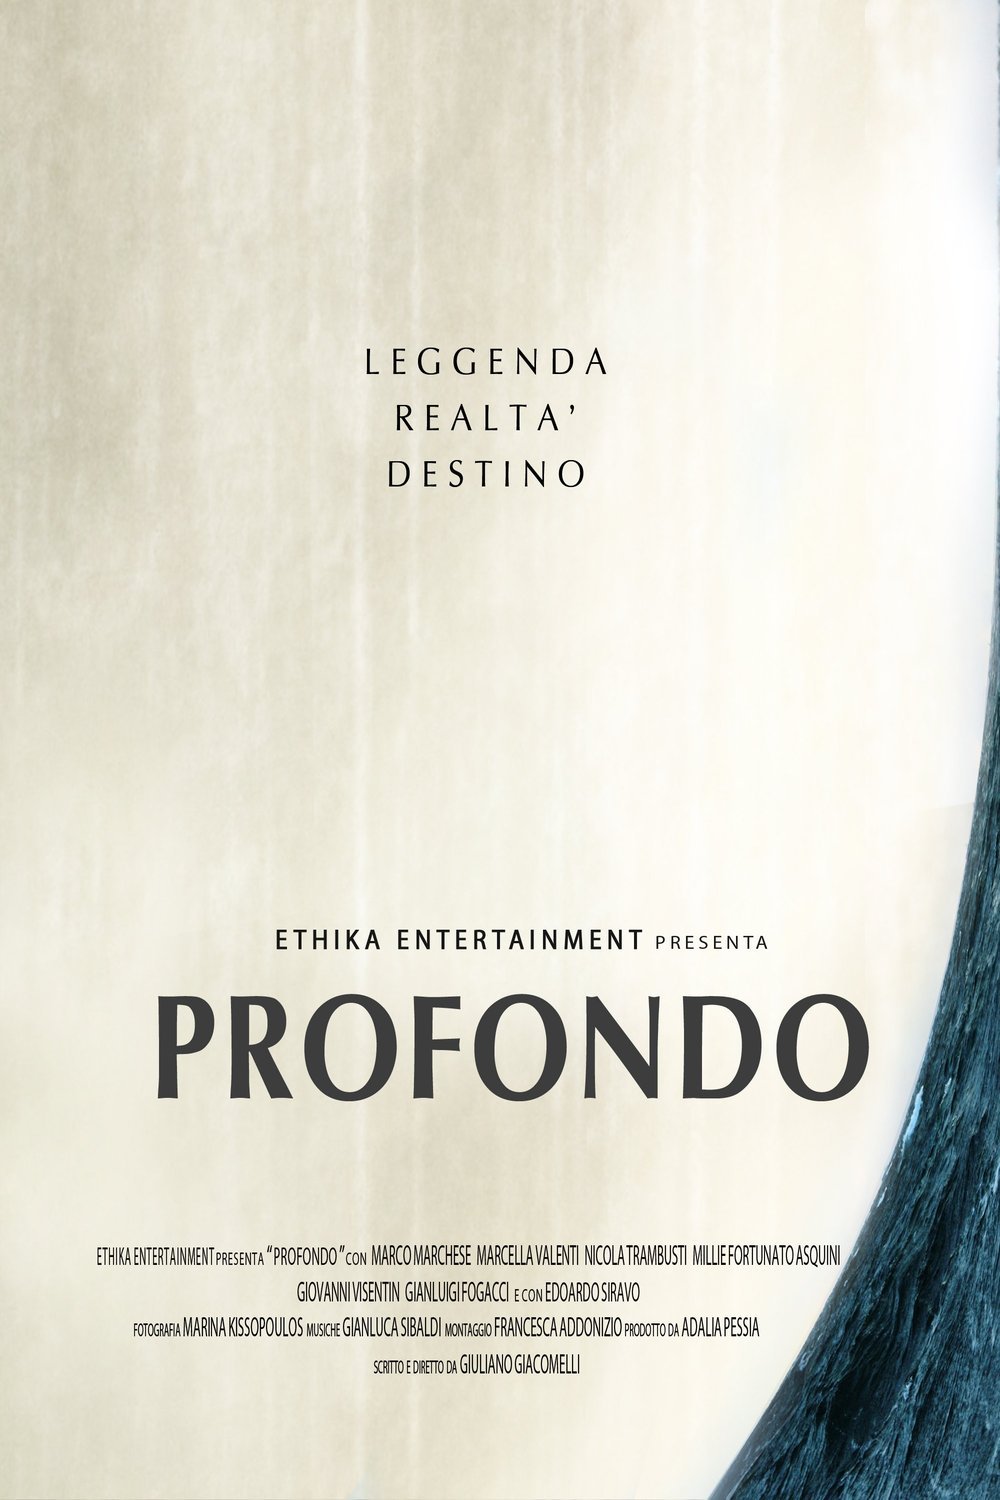 Italian poster of the movie Profondo